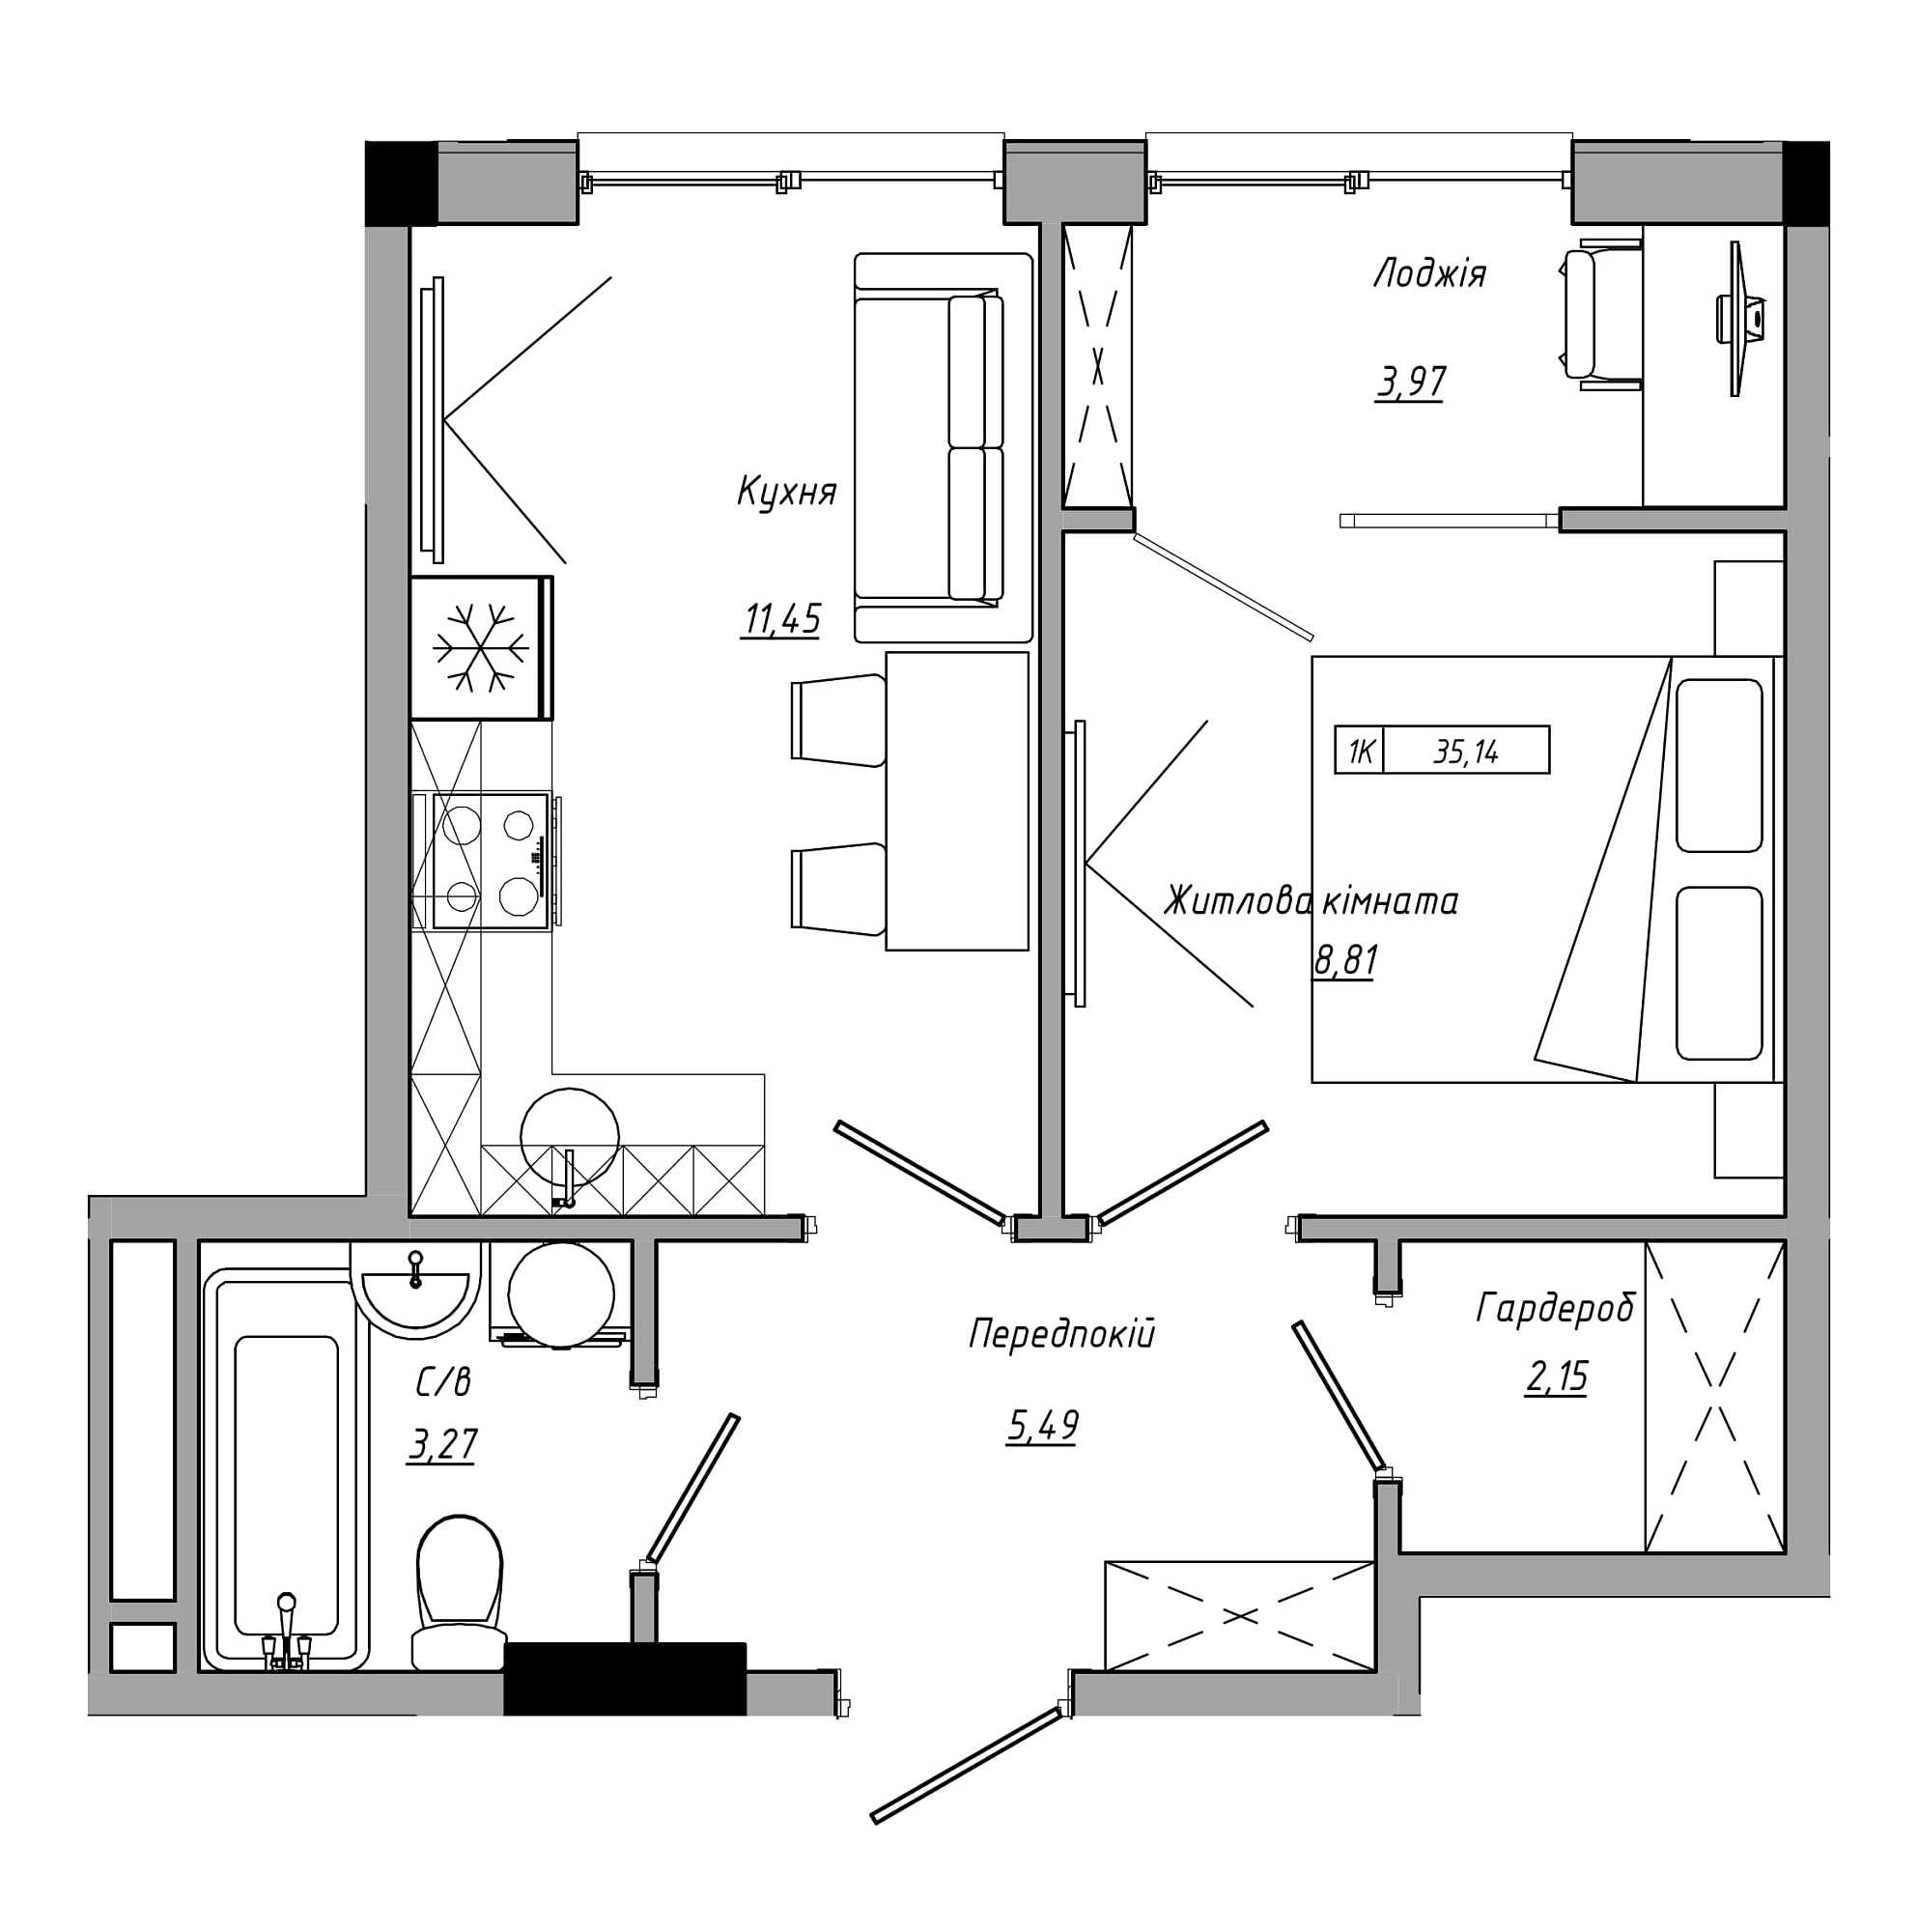 Планировка 1-к квартира площей 35.14м2, AB-21-08/00013.